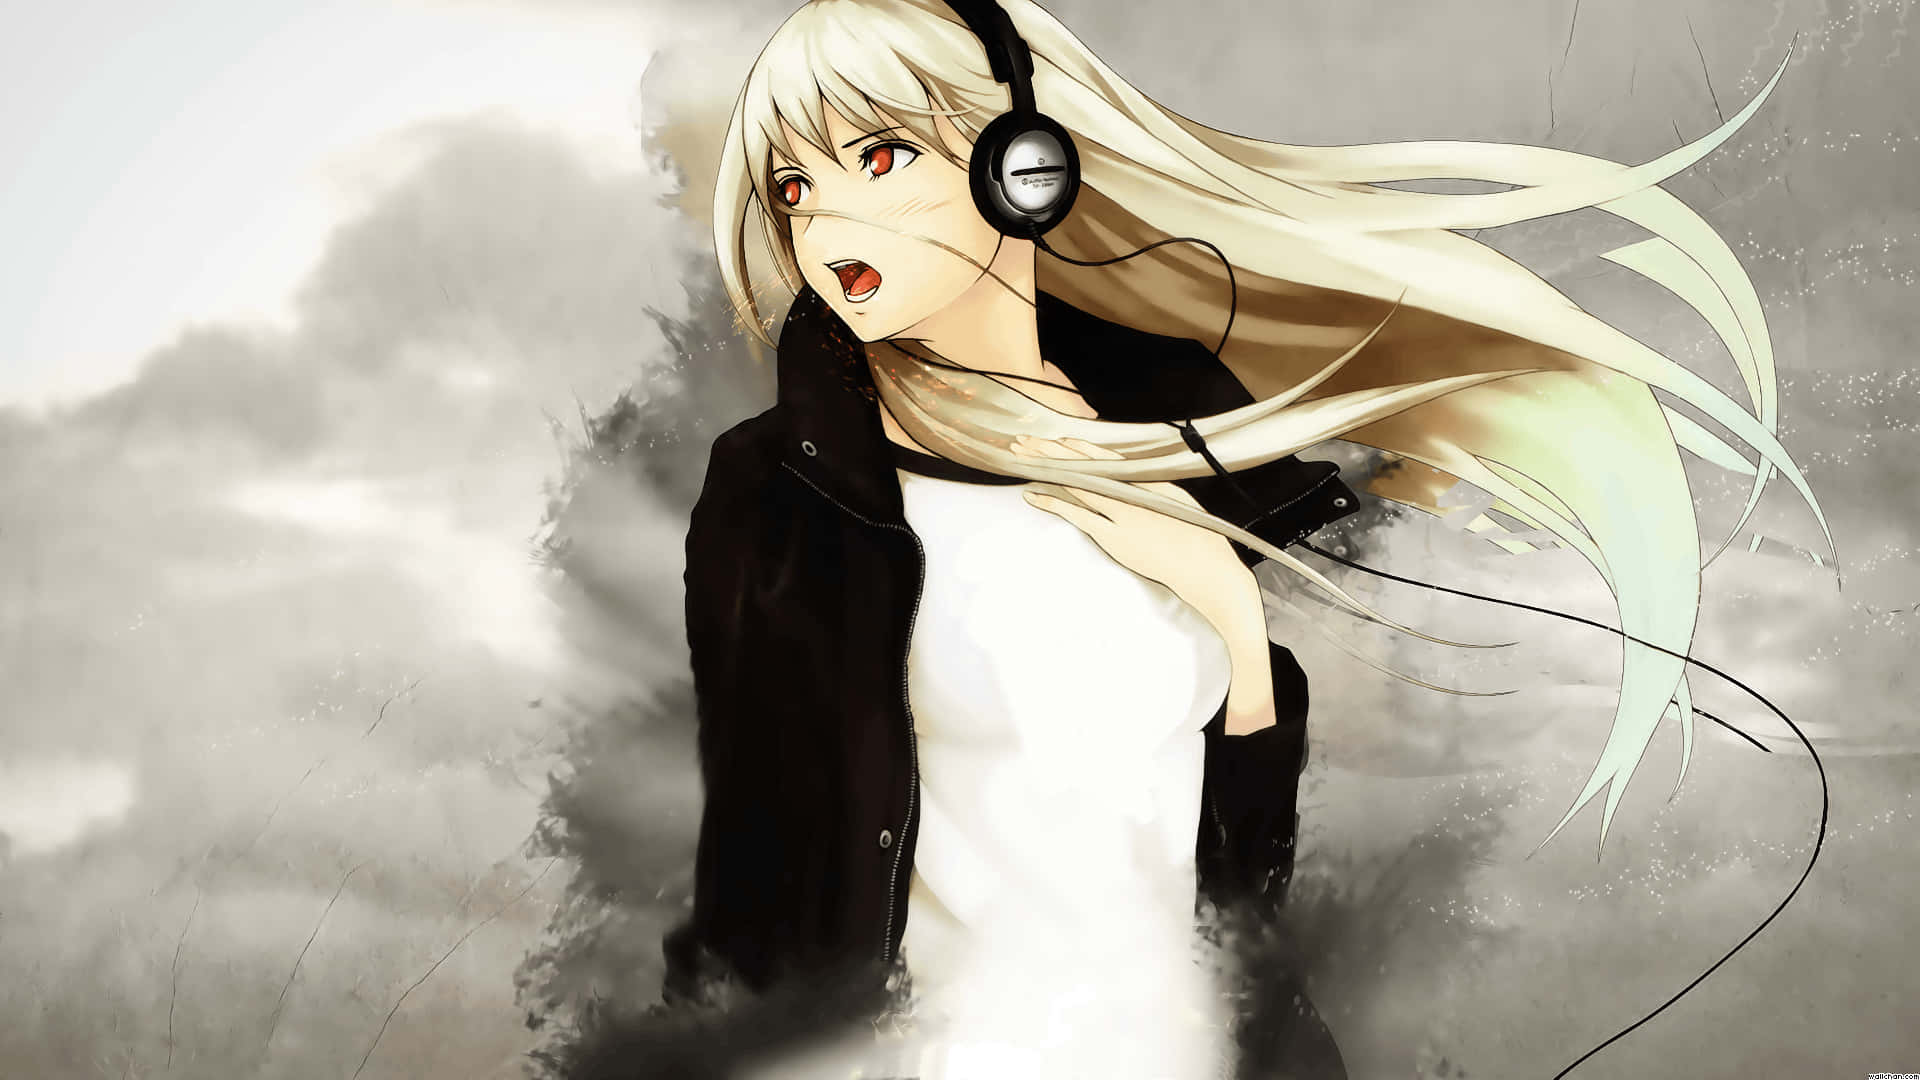 Good Anime Girl Headphones For Songs Wallpaper